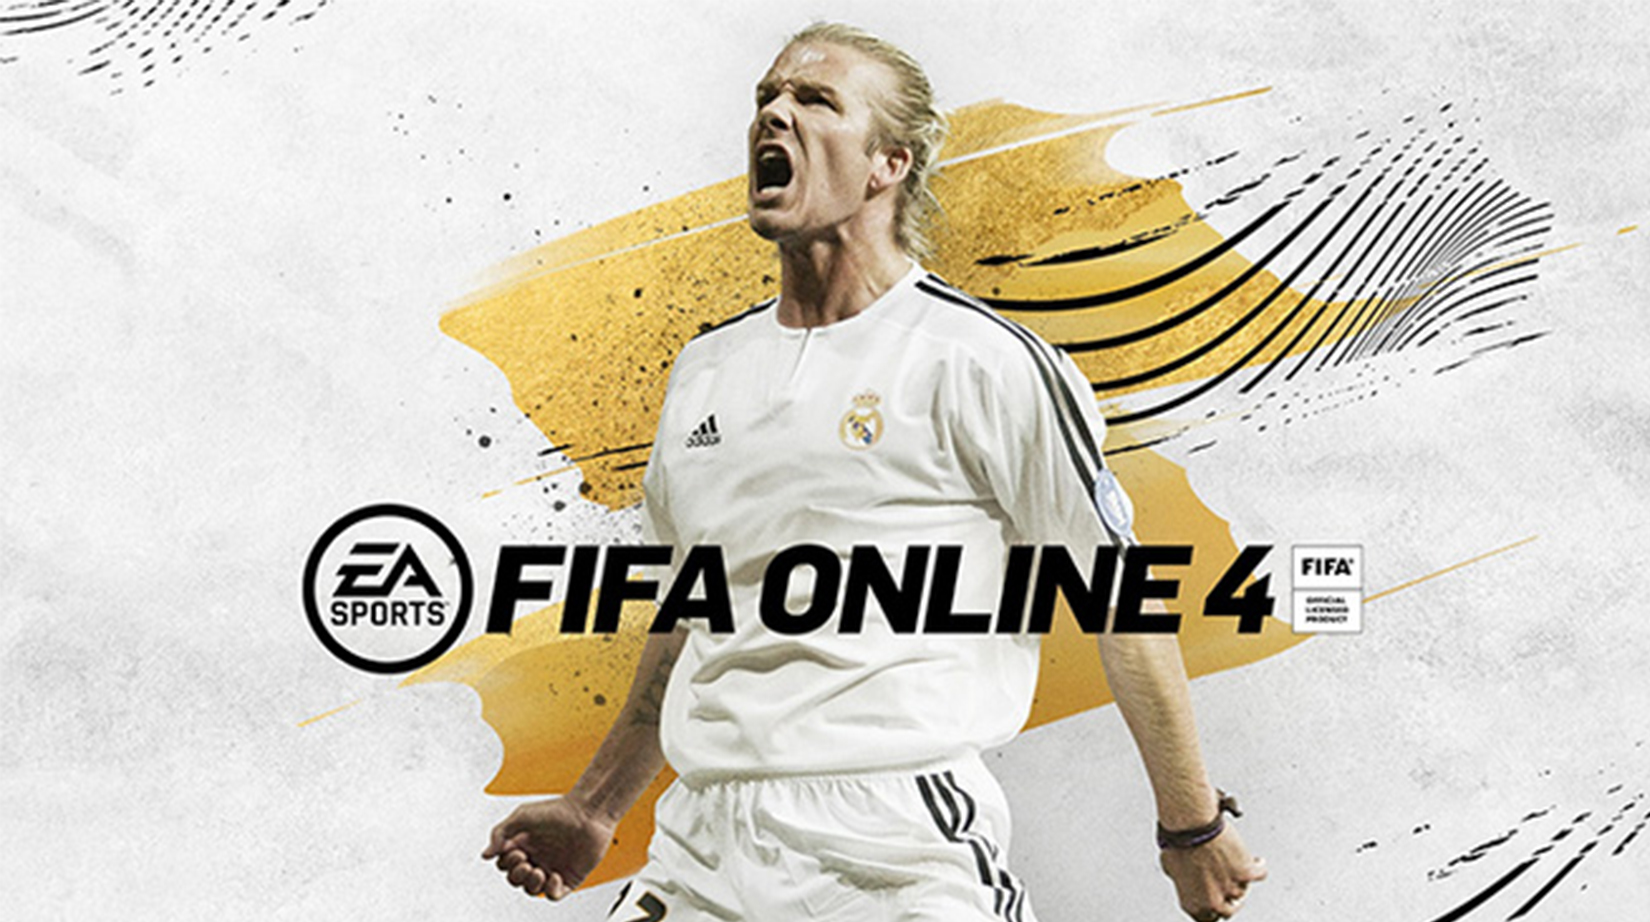 FIFA Online 4: Top 4 Team Color bá đạo được nhiều người chơi lựa ...